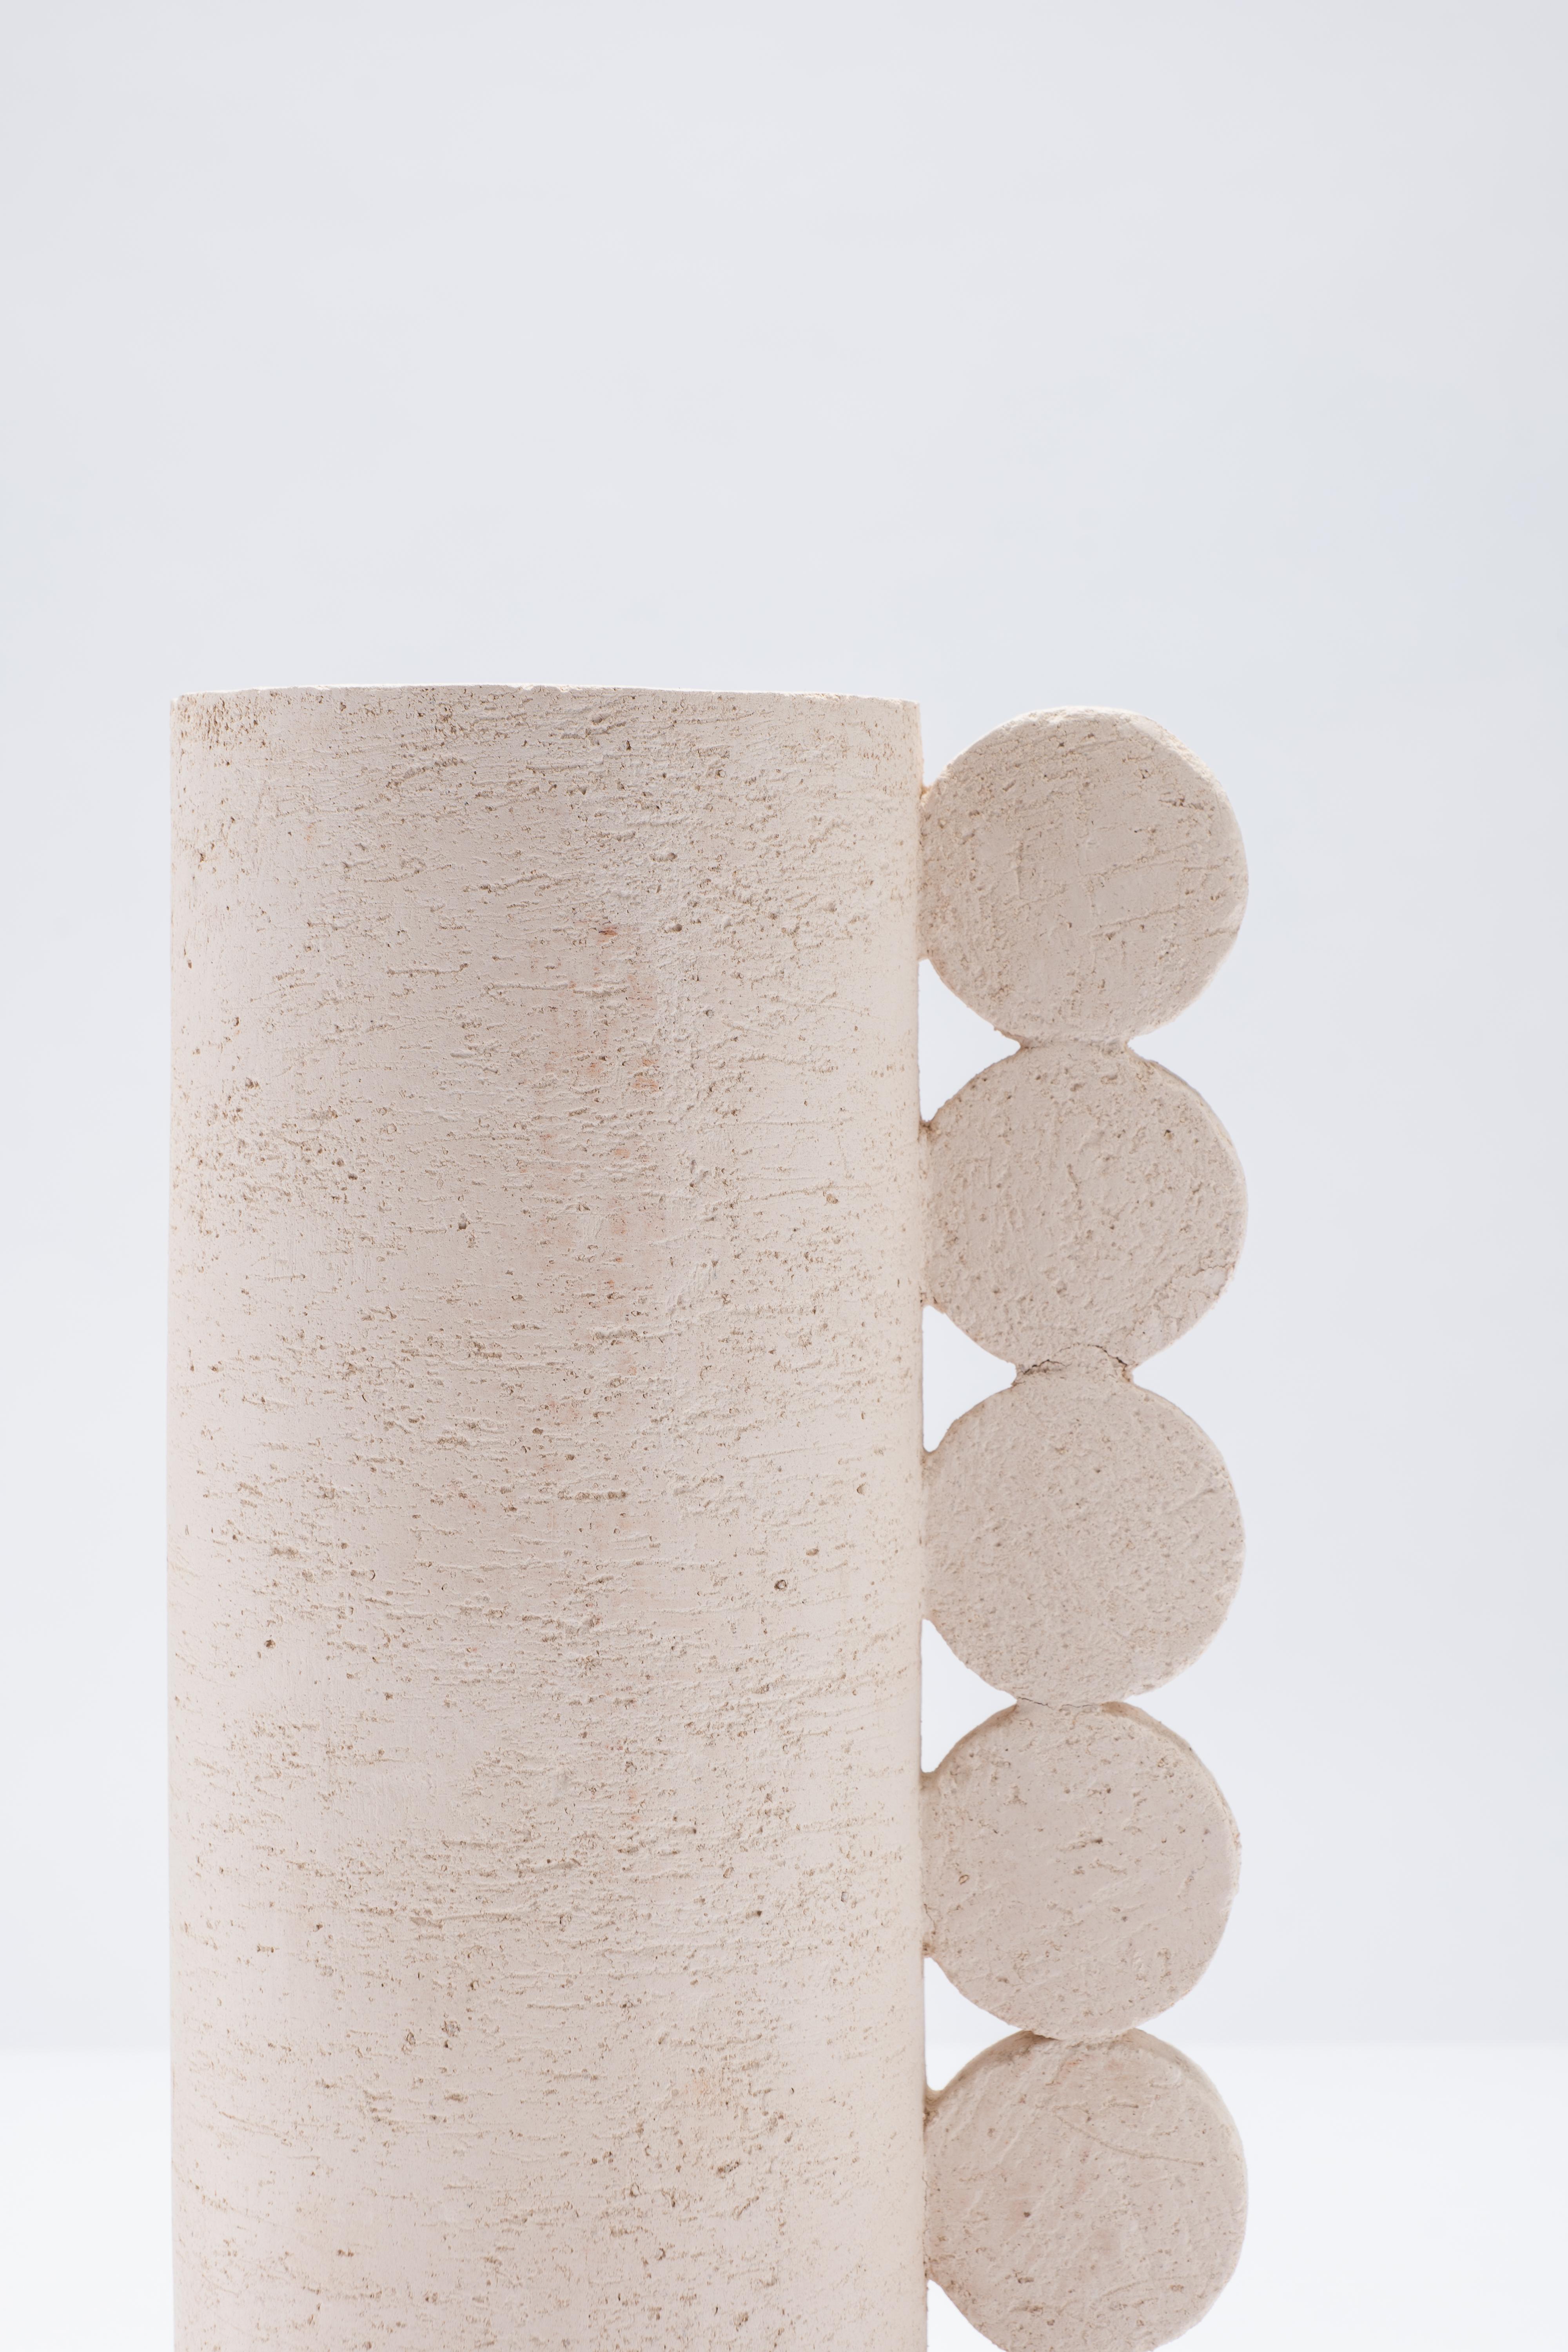 Contemporary Cuorecarpenito Terracotta White Vase Bibi Australe Collection For Sale 2